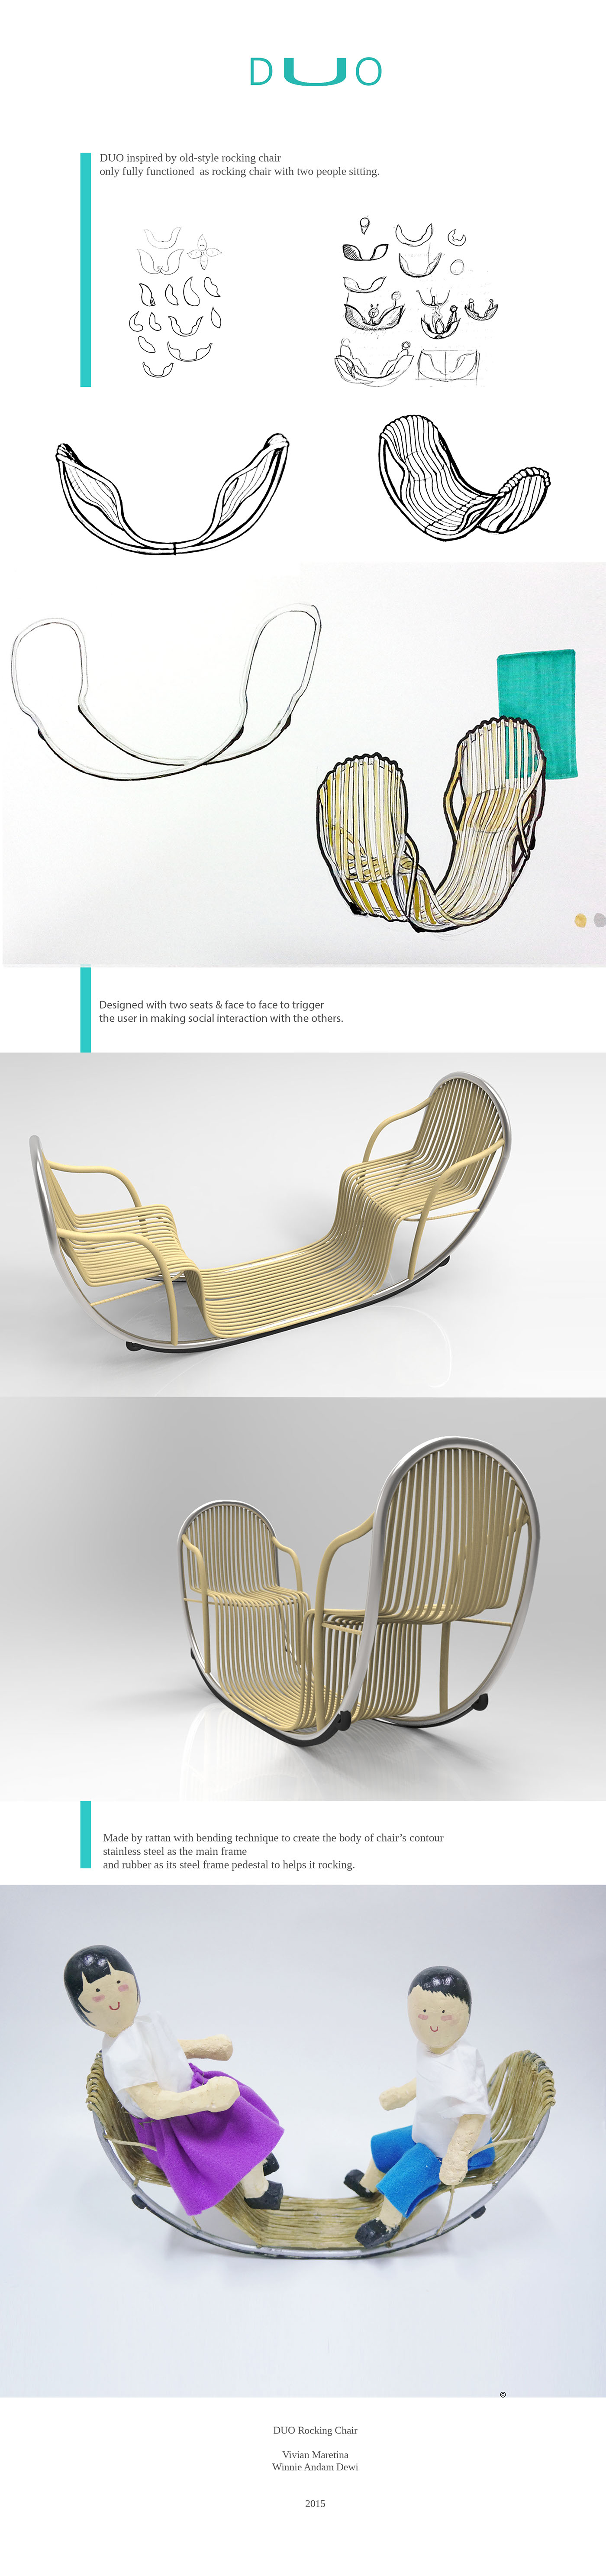 chair furniture rattan furniture design  indonesia